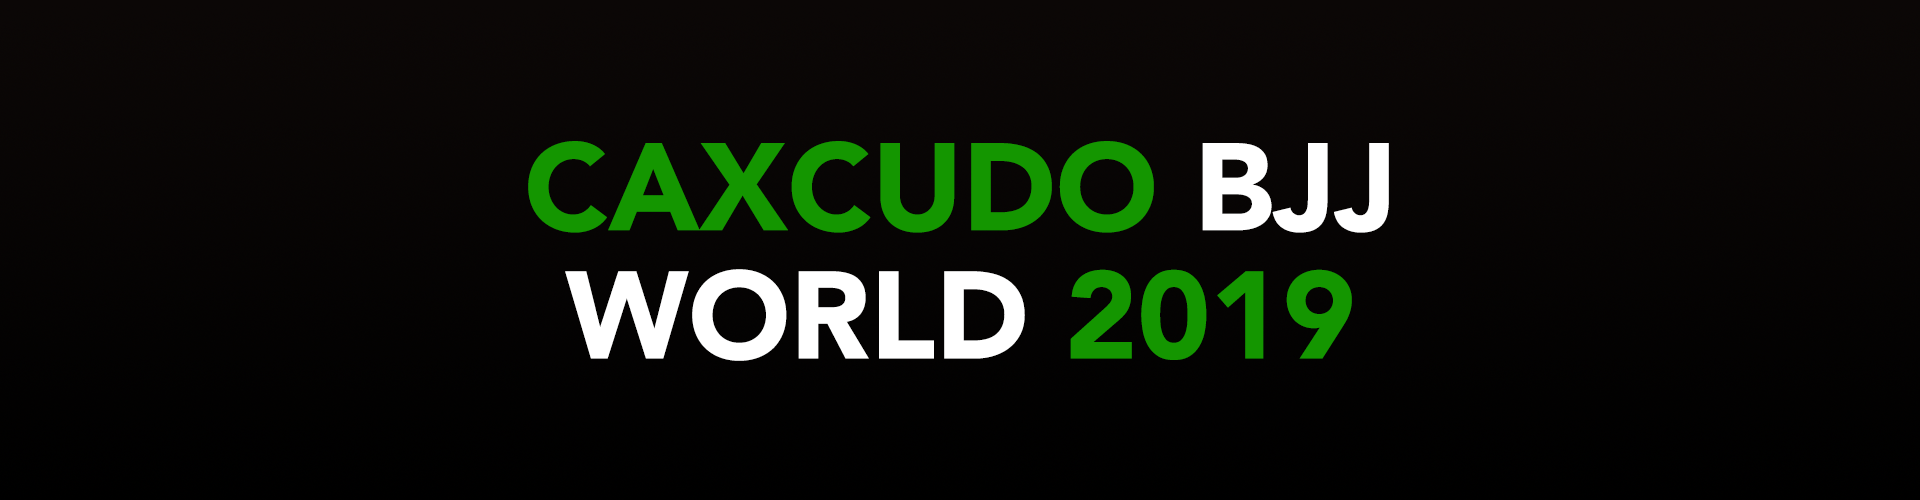 2019 Caxcudo World Brazilian Jiu-Jitsu Championships Banner